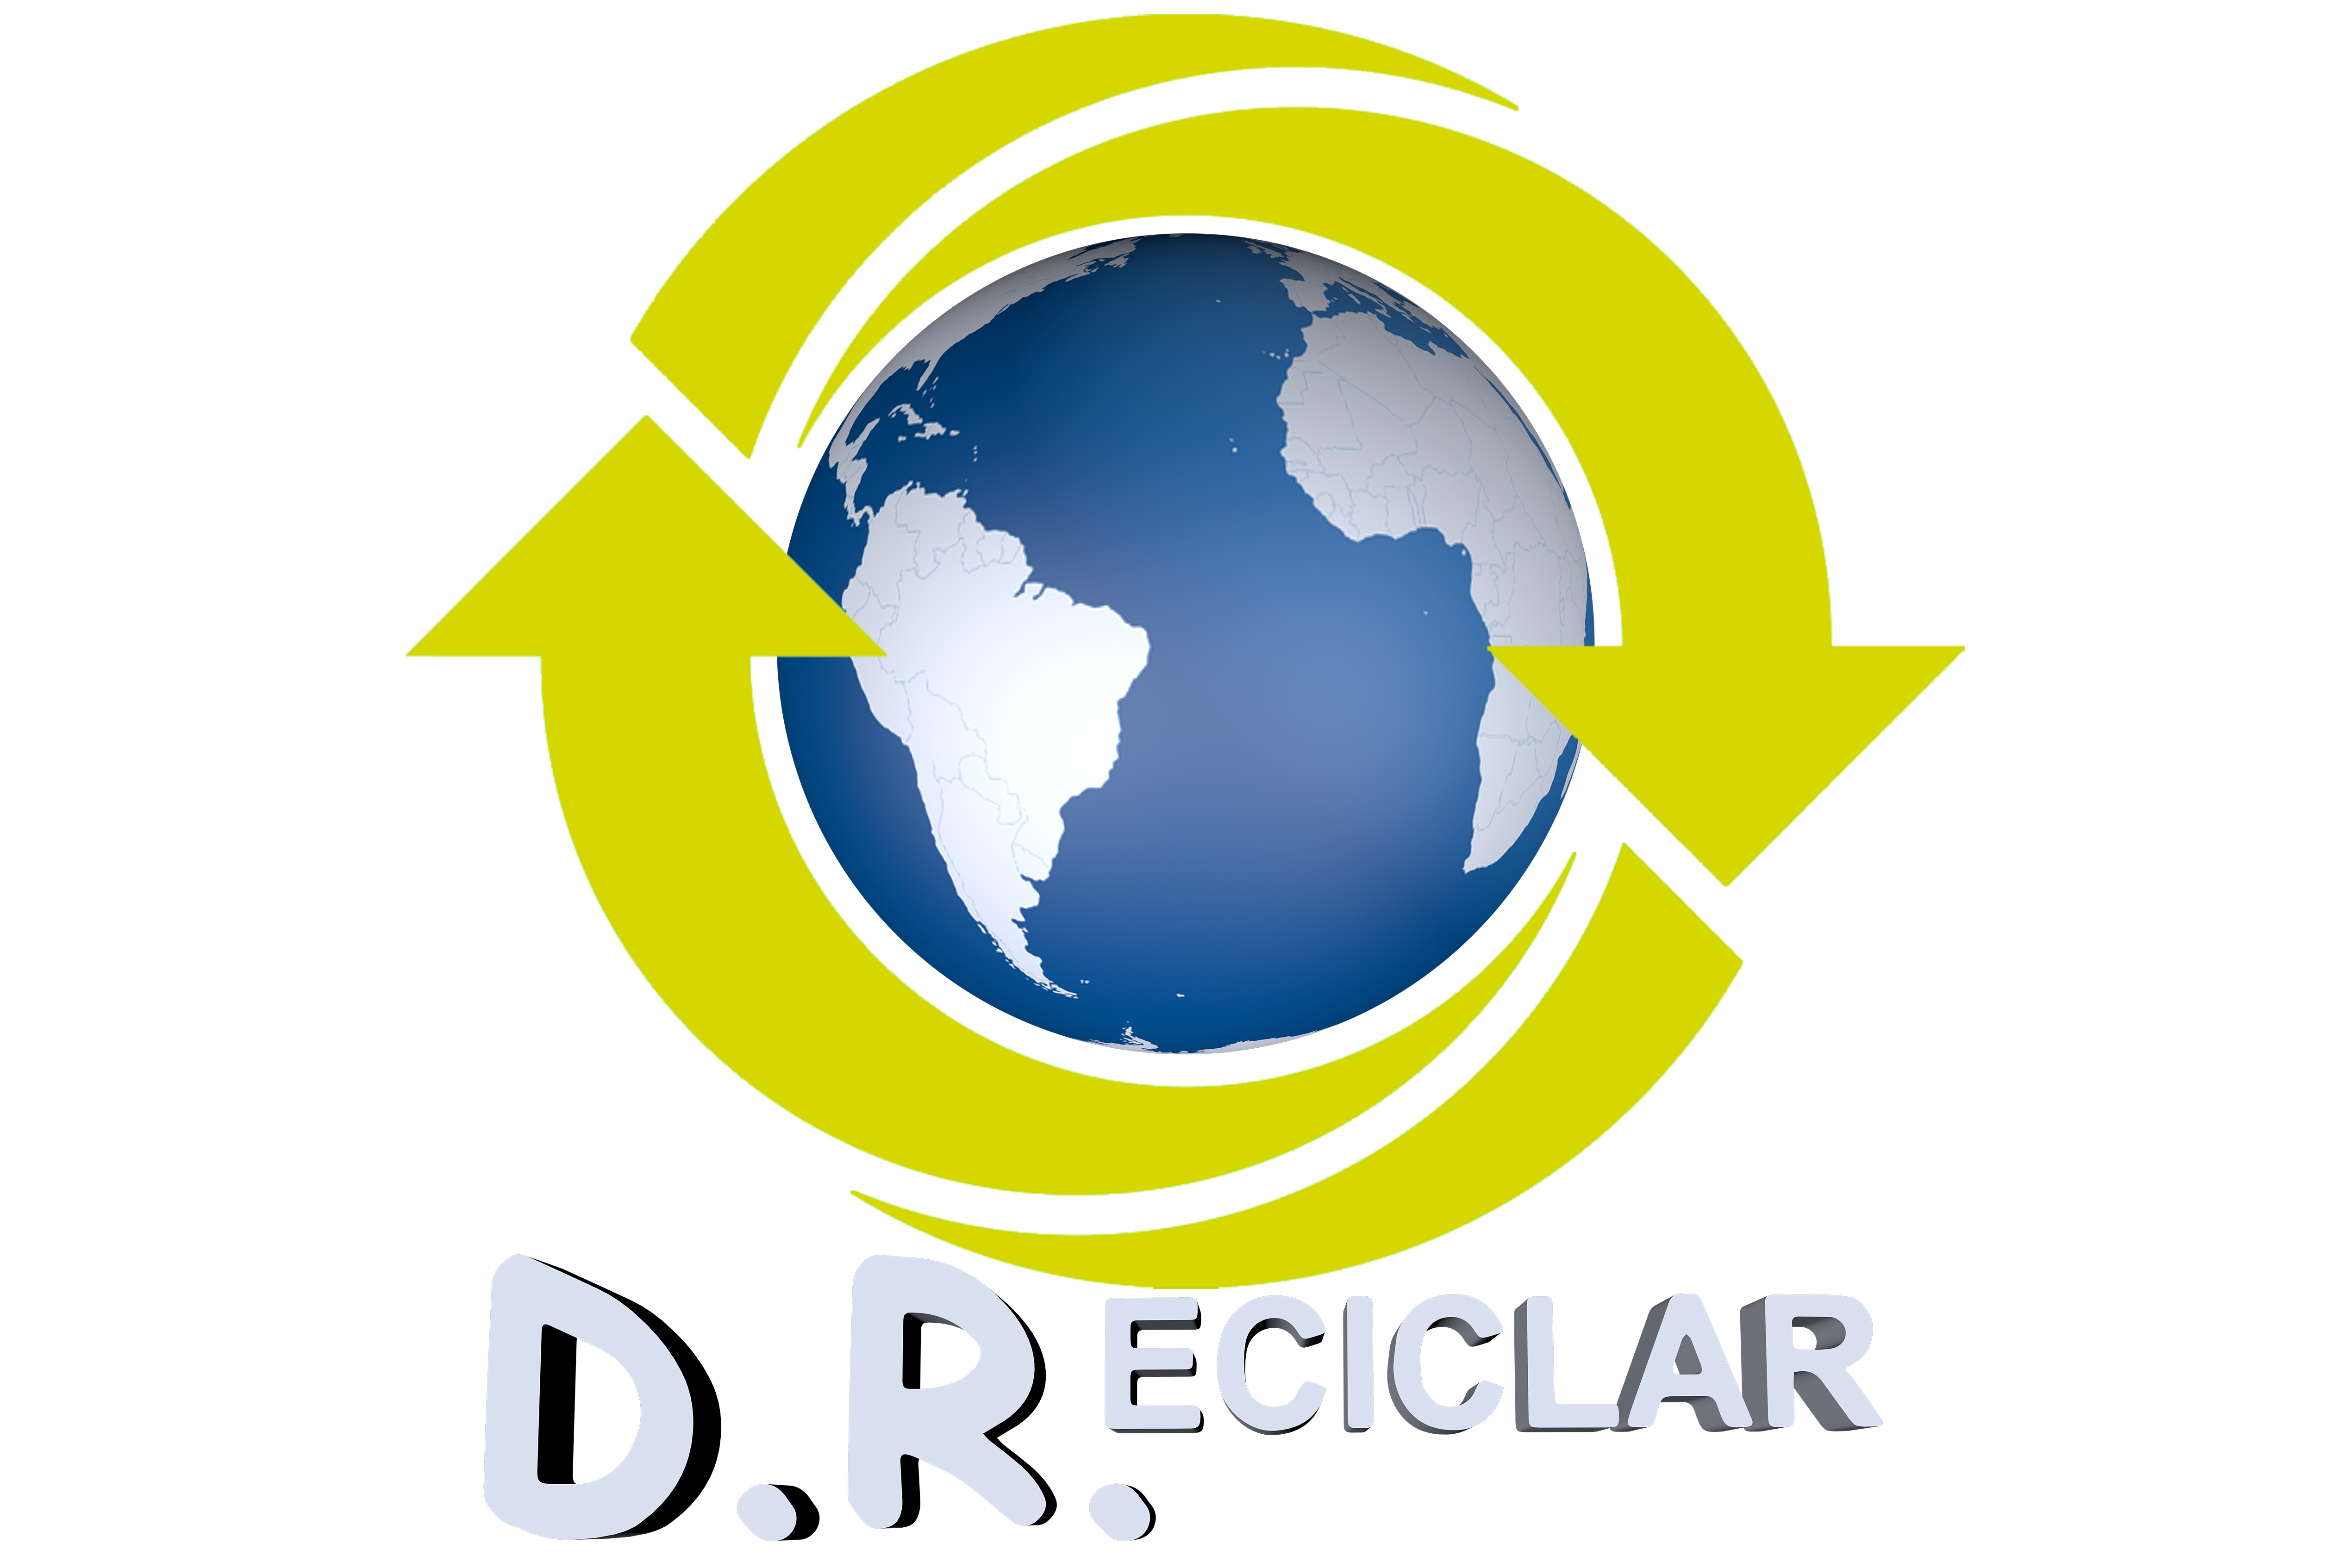 D.R.eciclar